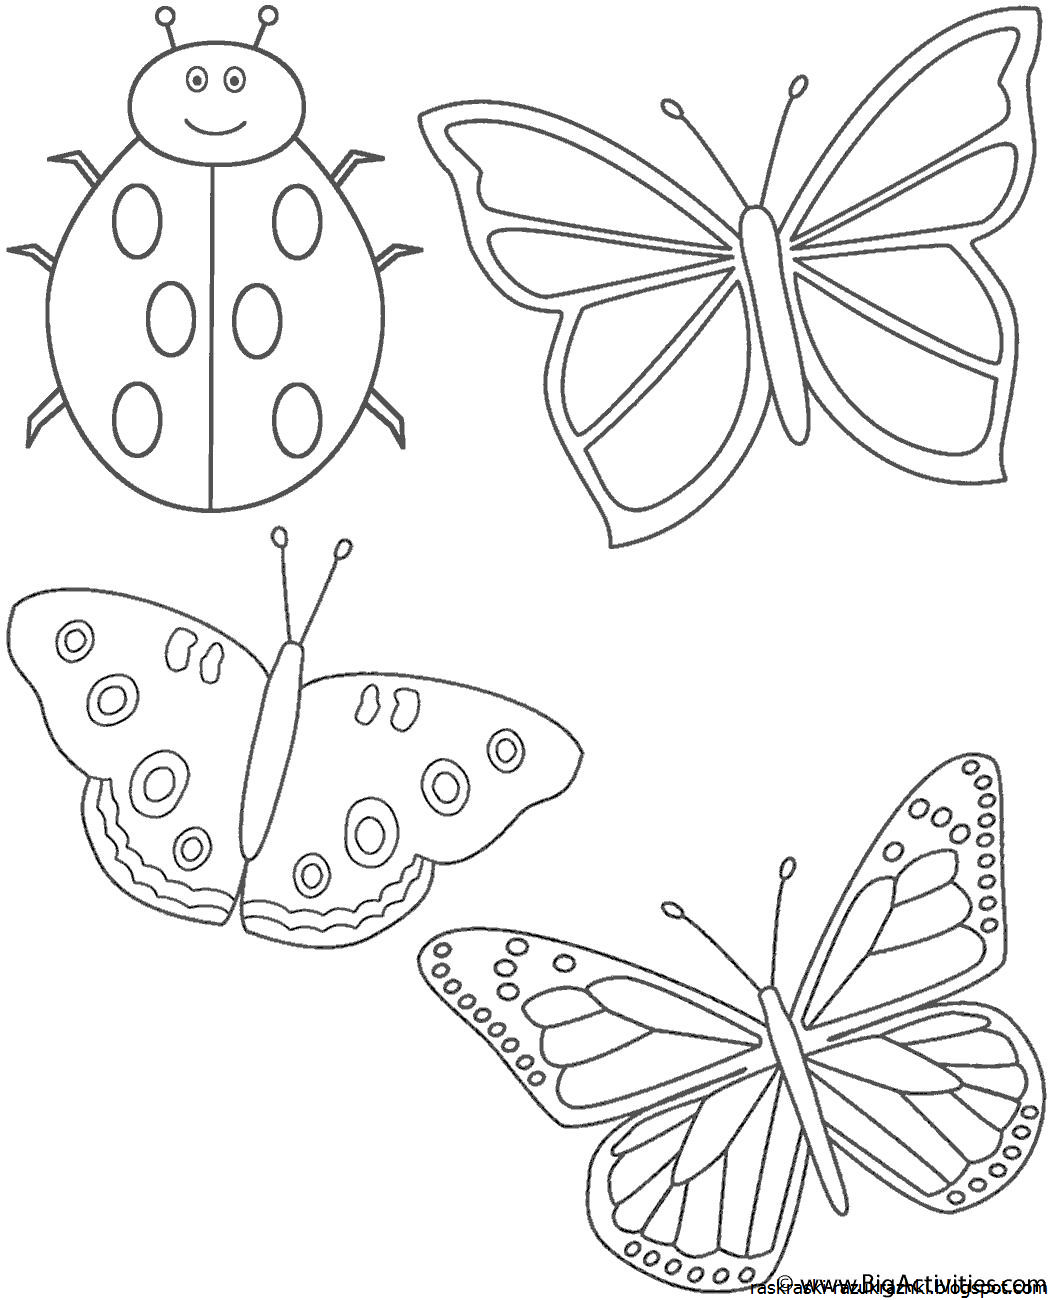 Рисунки для раскрашивания. Бабочка раскраска для детей. Раскраска для малы бабочка. Насекомые. Раскраска. Рисование картинки шаблоны